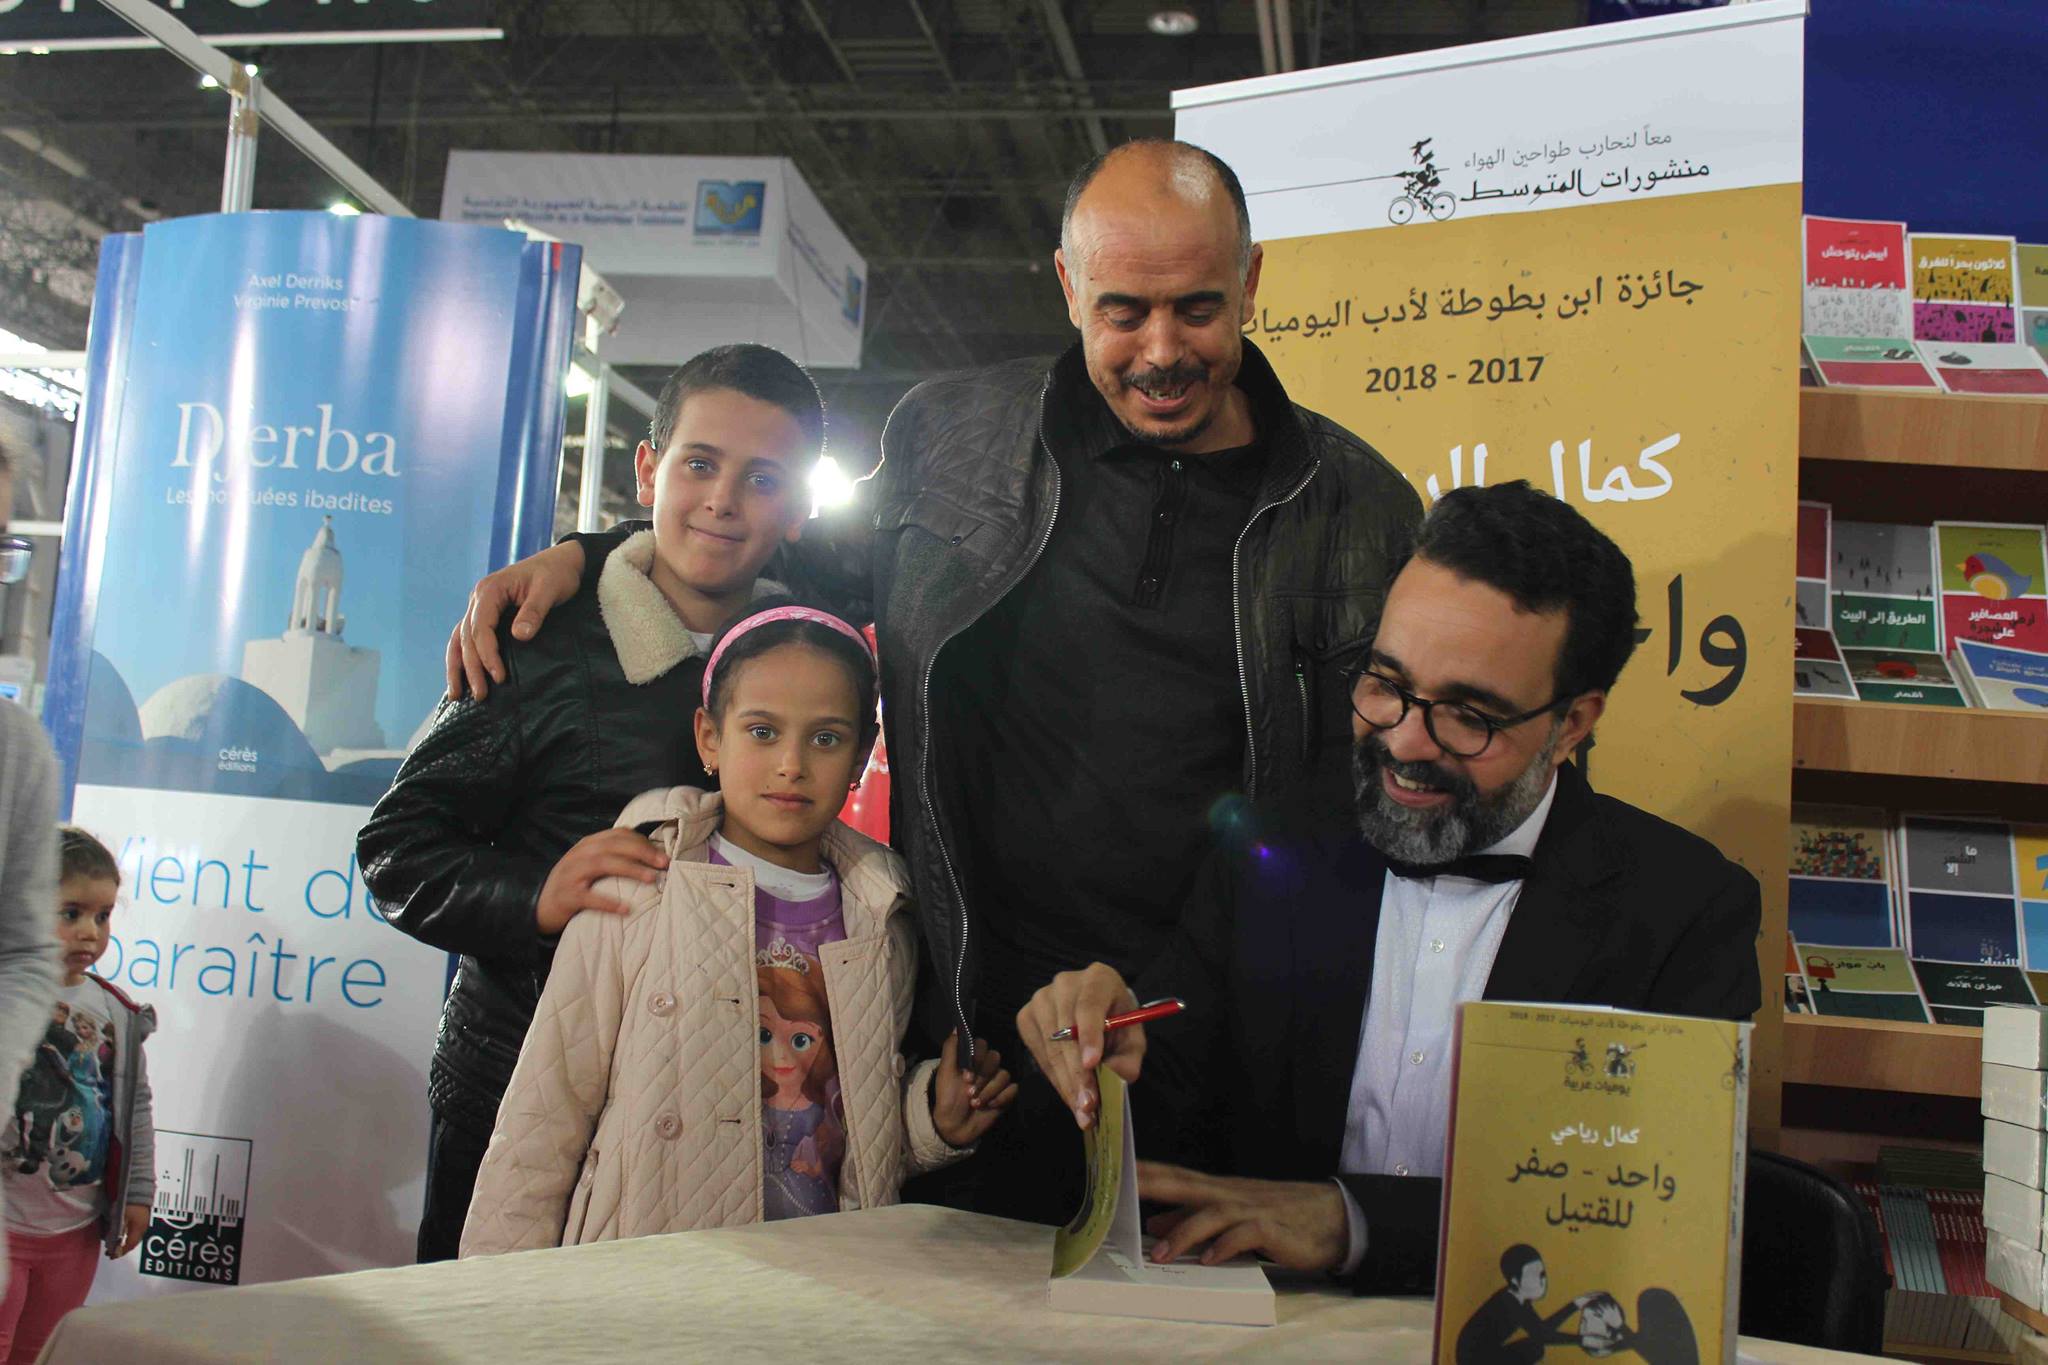 كمال الرياحى يوقع كتابه واحد صفر للقتيل الفائز بجائزة ابن بطوطة فى معرض تونس (2)